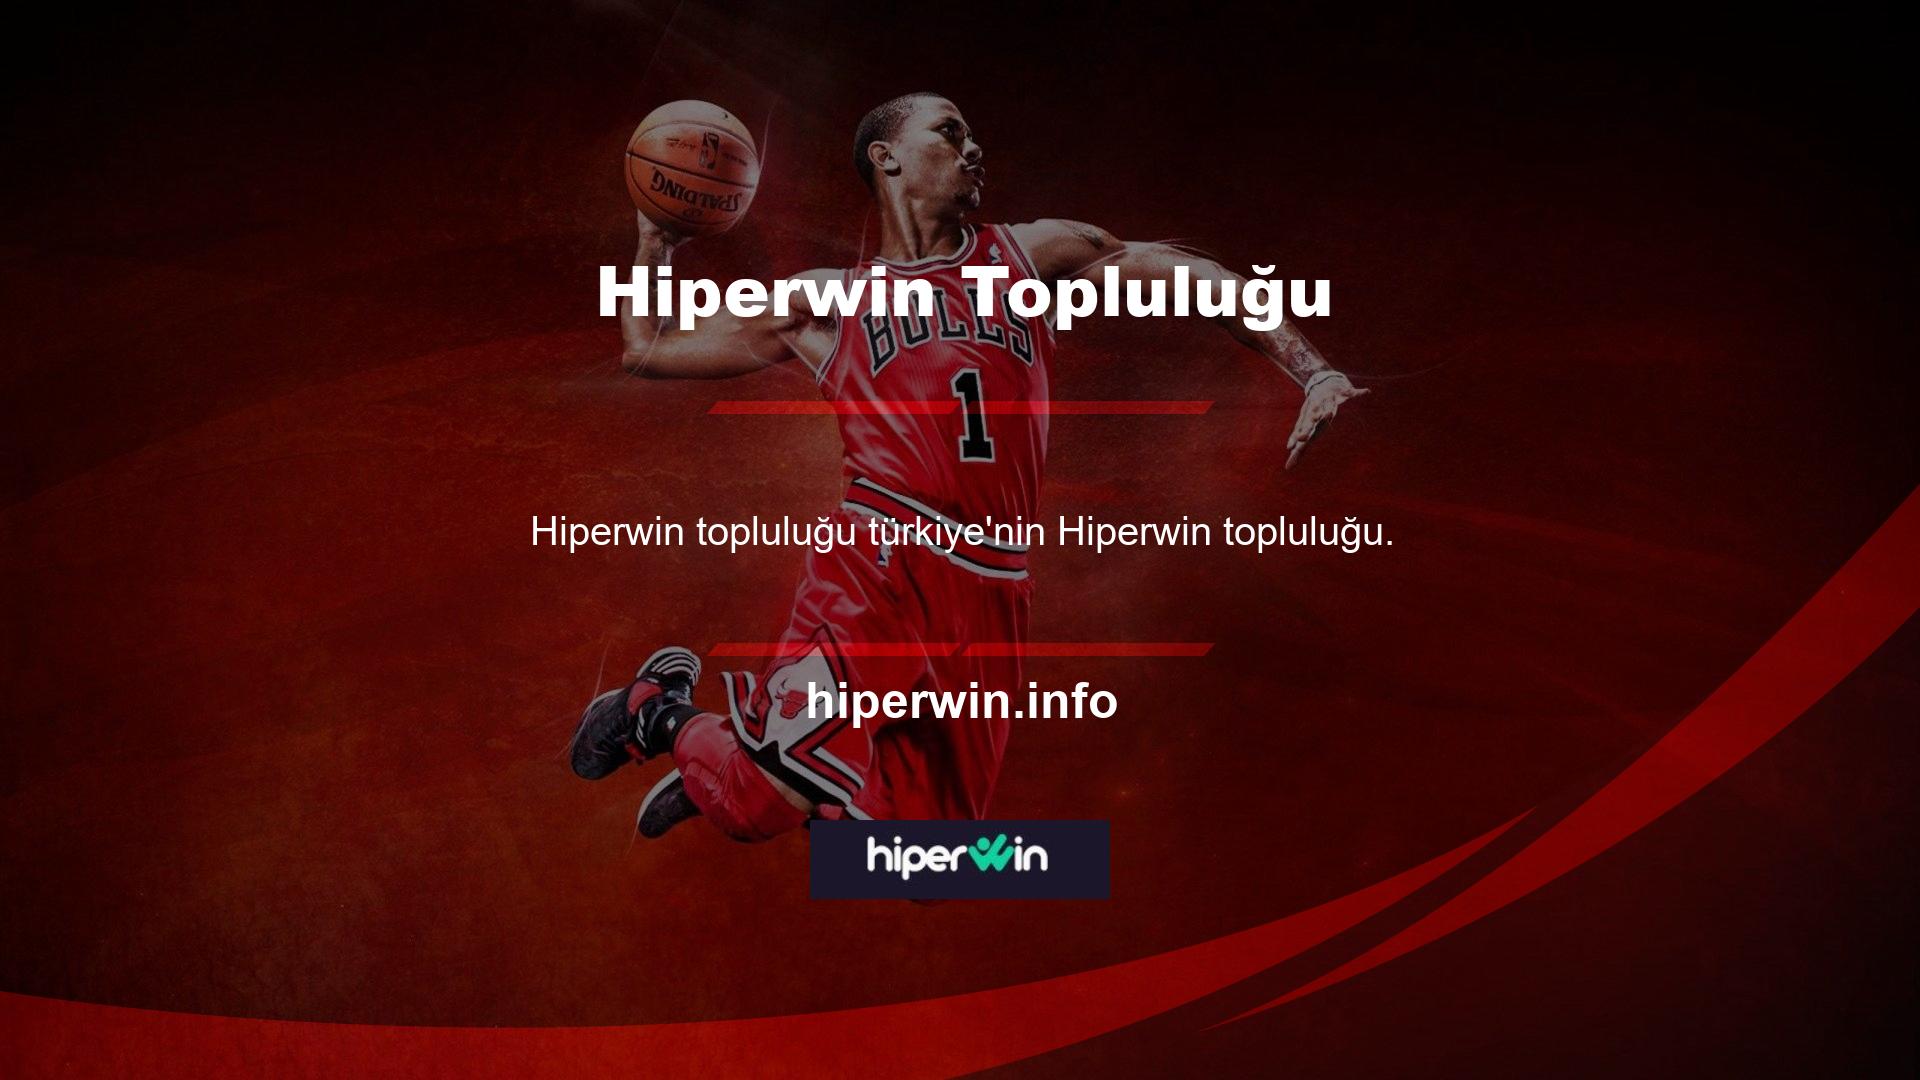 Türkiye'nin Hiperwin sisteminde, Türkçe Hiperwin ile cep telefonunuzdan da eskisi gibi aynı işlevselliğe erişebilirsiniz